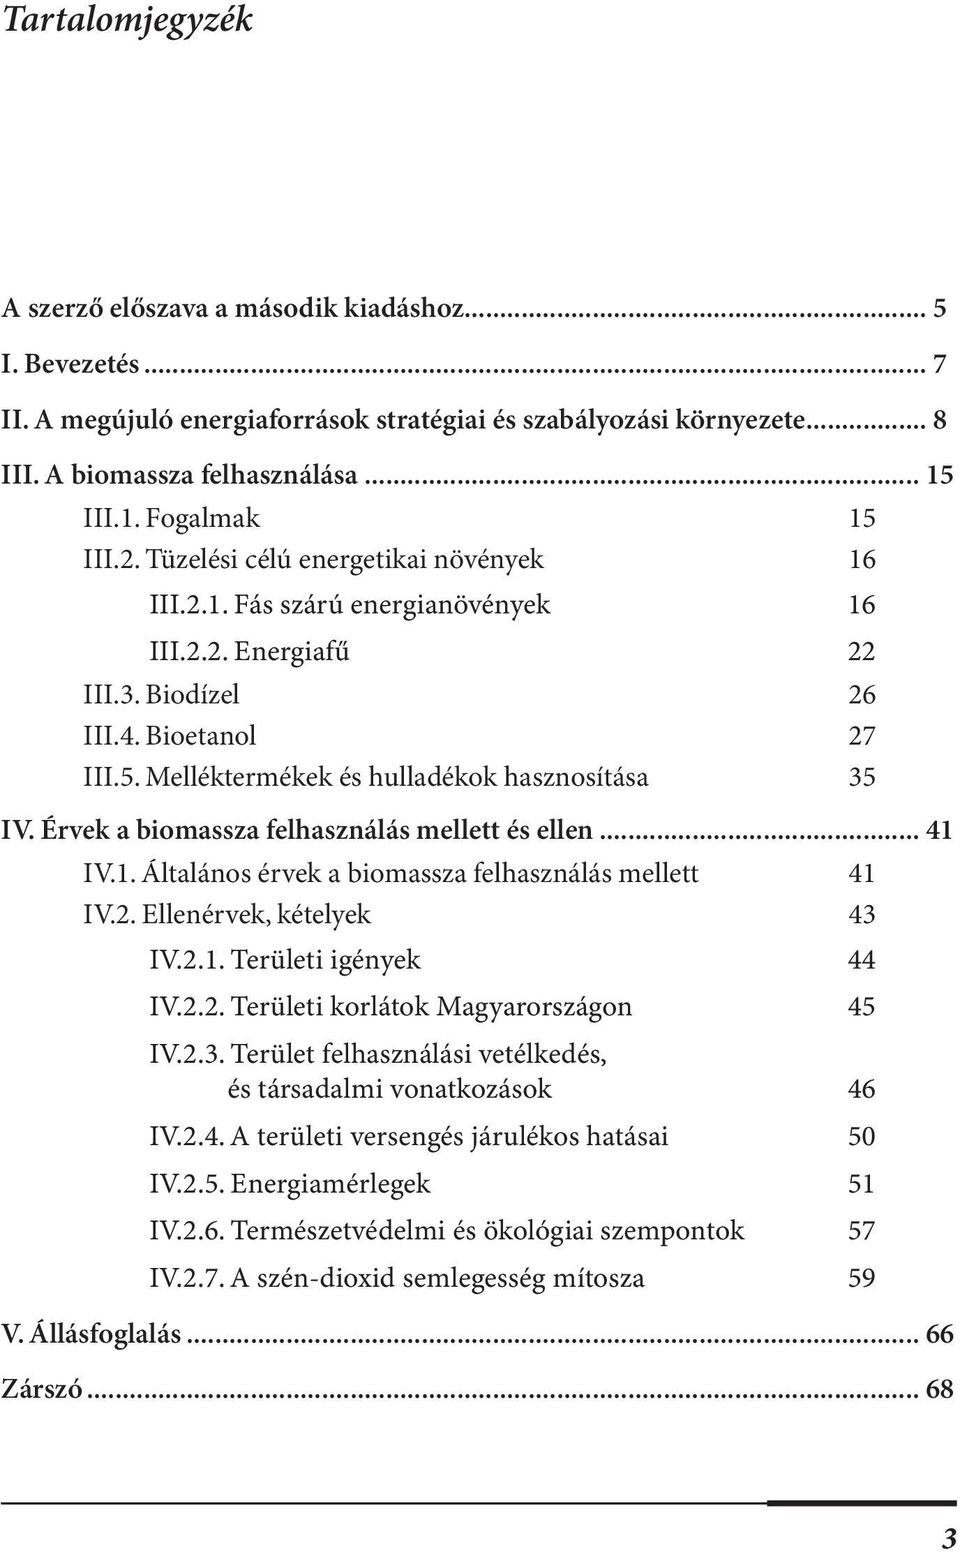 Érvek a biomassza felhasználás mellett és ellen... 41 IV.1. Általános érvek a biomassza felhasználás mellett 41 IV.2. Ellenérvek, kételyek 43 IV.2.1. Területi igények 44 IV.2.2. Területi korlátok Magyarországon 45 IV.